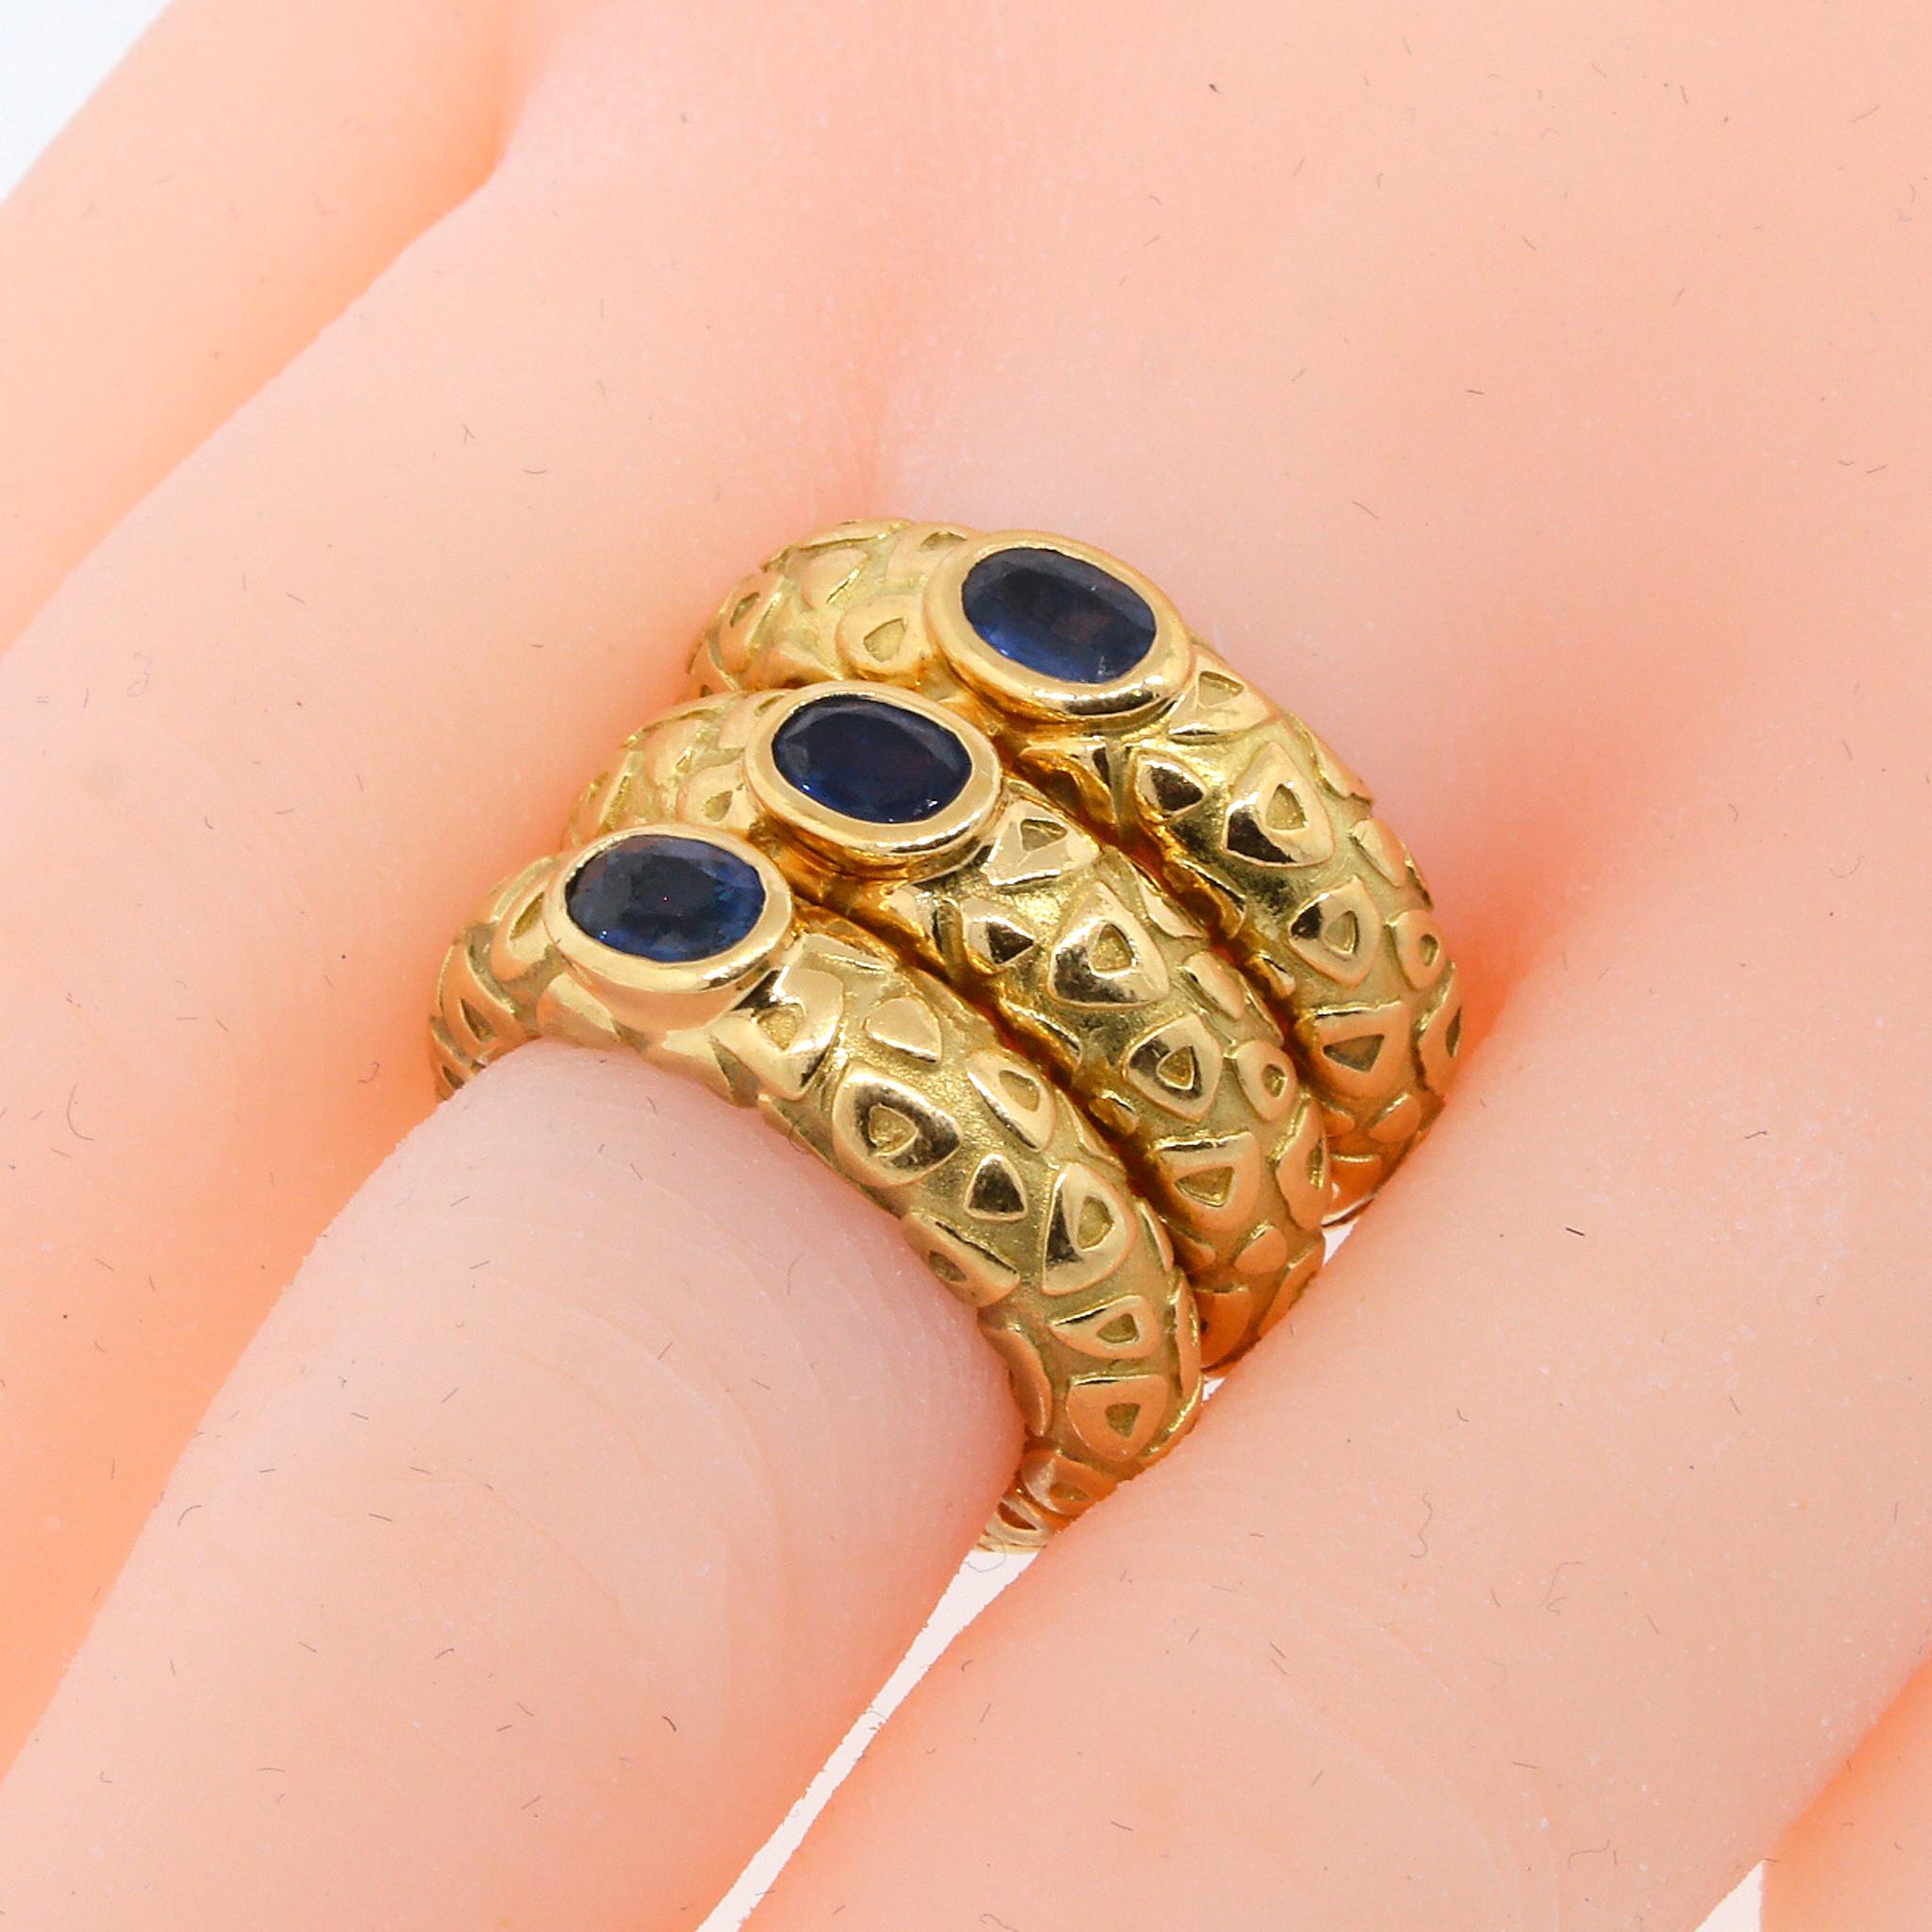 Dieser Ring des berühmten französischen Juwelierhauses Chaumet trägt eines der charakteristischen Strukturmuster des Hauses. 

18 kt Gelbgold
Verfügbare Größen: 6, 6.25, 6.5
Kann auch gestapelt getragen werden